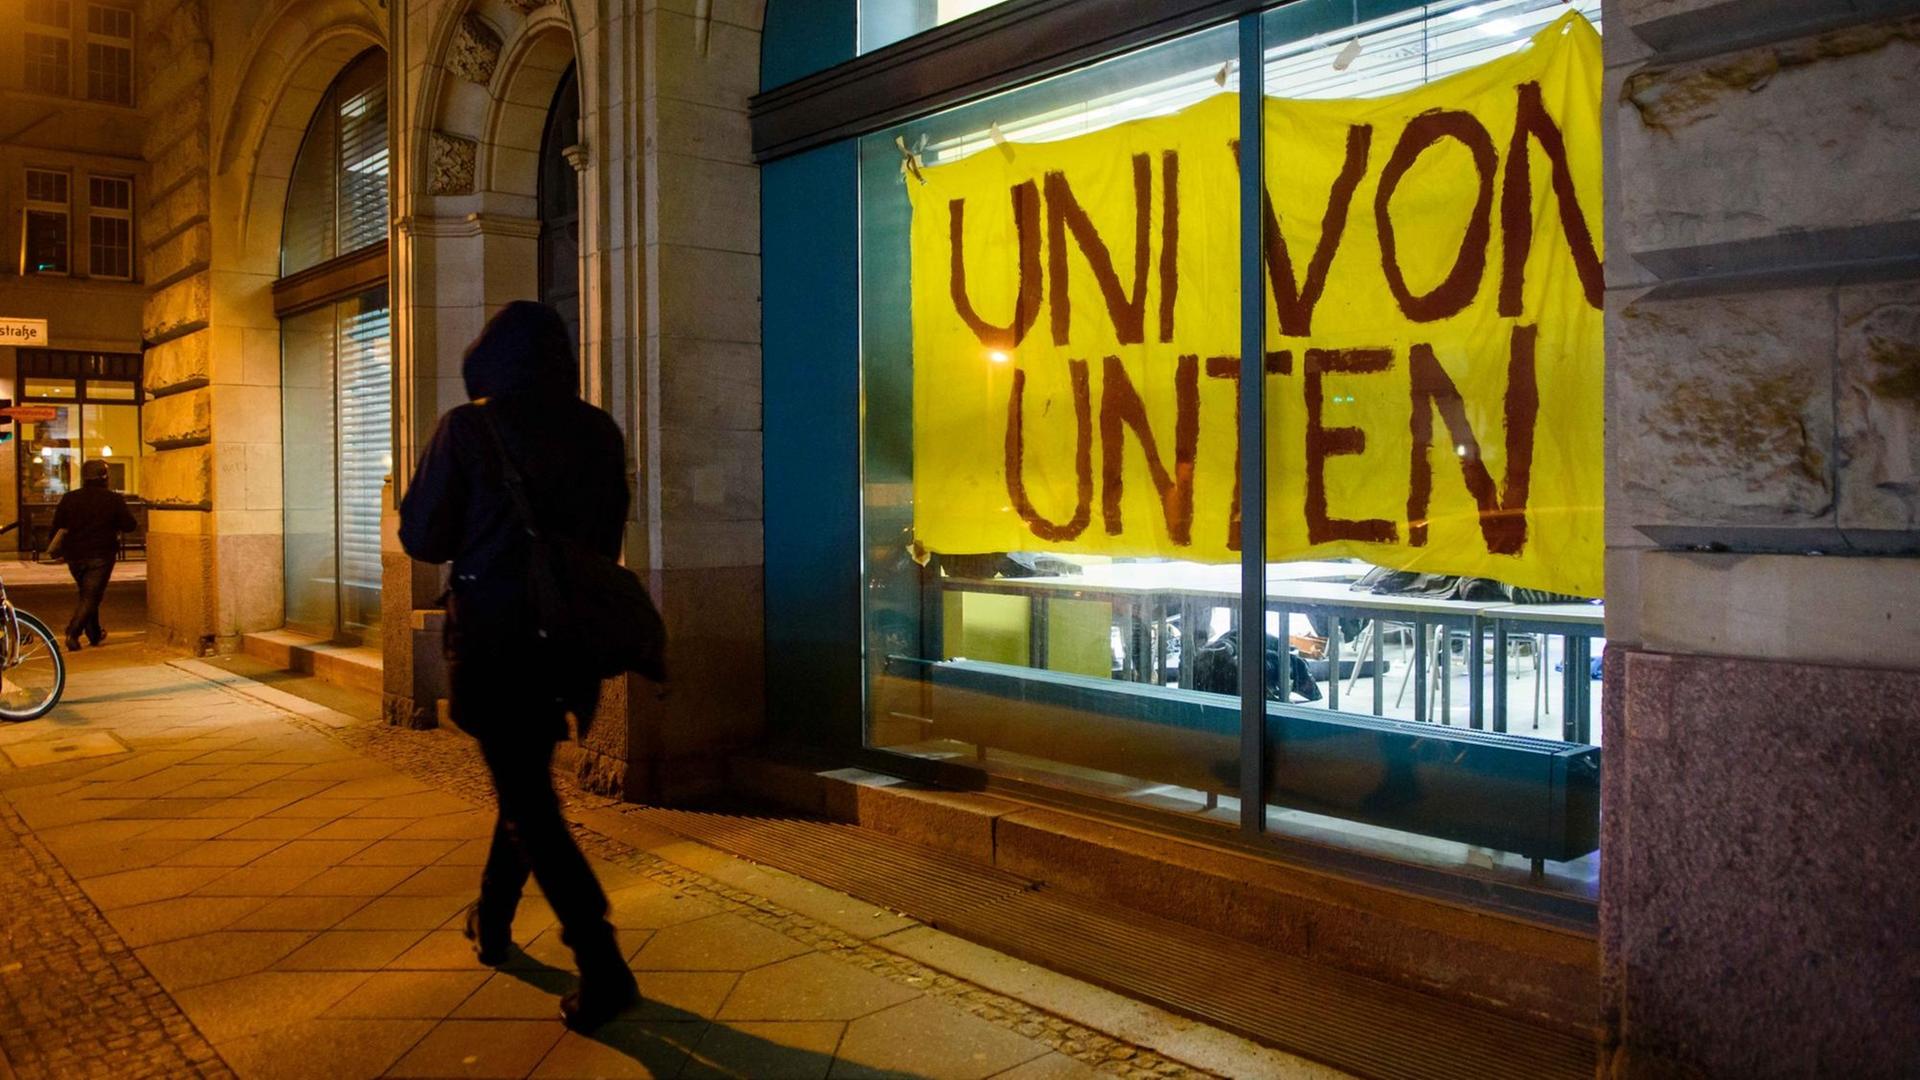 Ein Transparent mit der Aufschrift "Uni von Unten" hängt am 18.01.2017 an einem Fenster des Instituts für Sozialwissenschaften der Humboldt-Universität in Berlin.